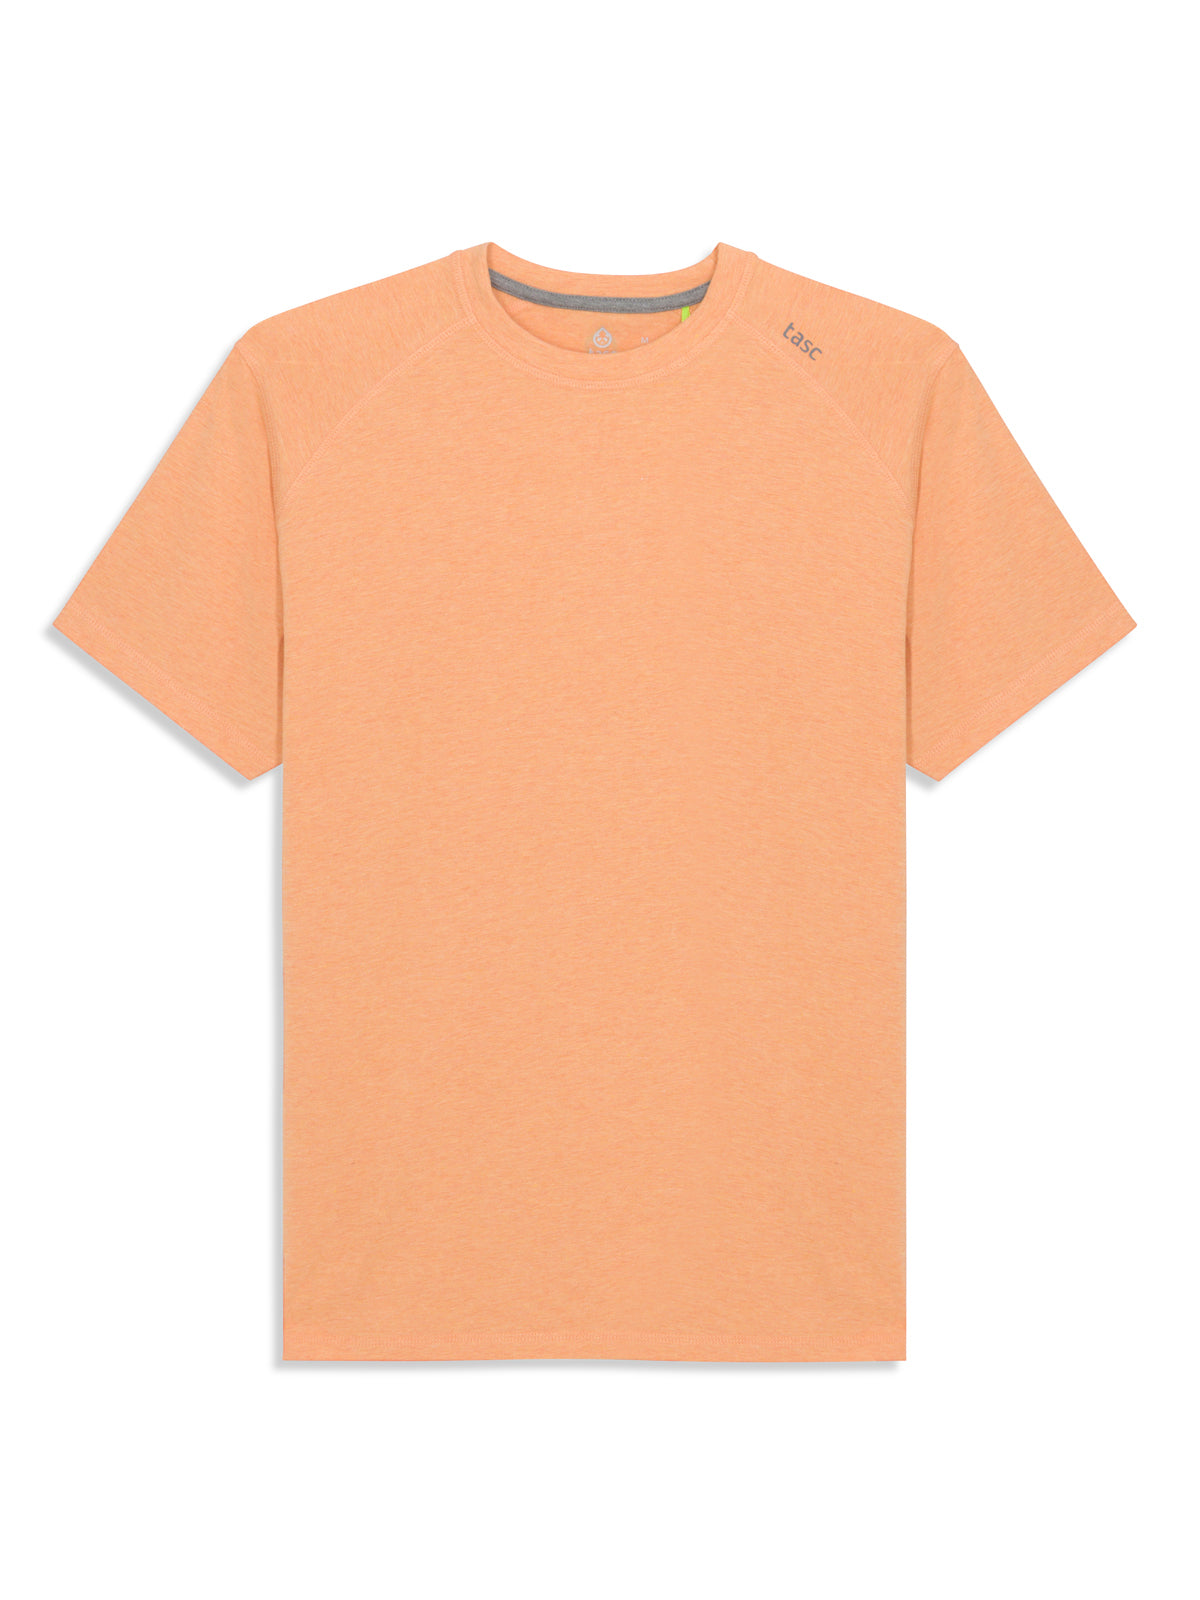 Carrollton Fitness T-Shirt - Seasonal (ApricotCrushHeather)